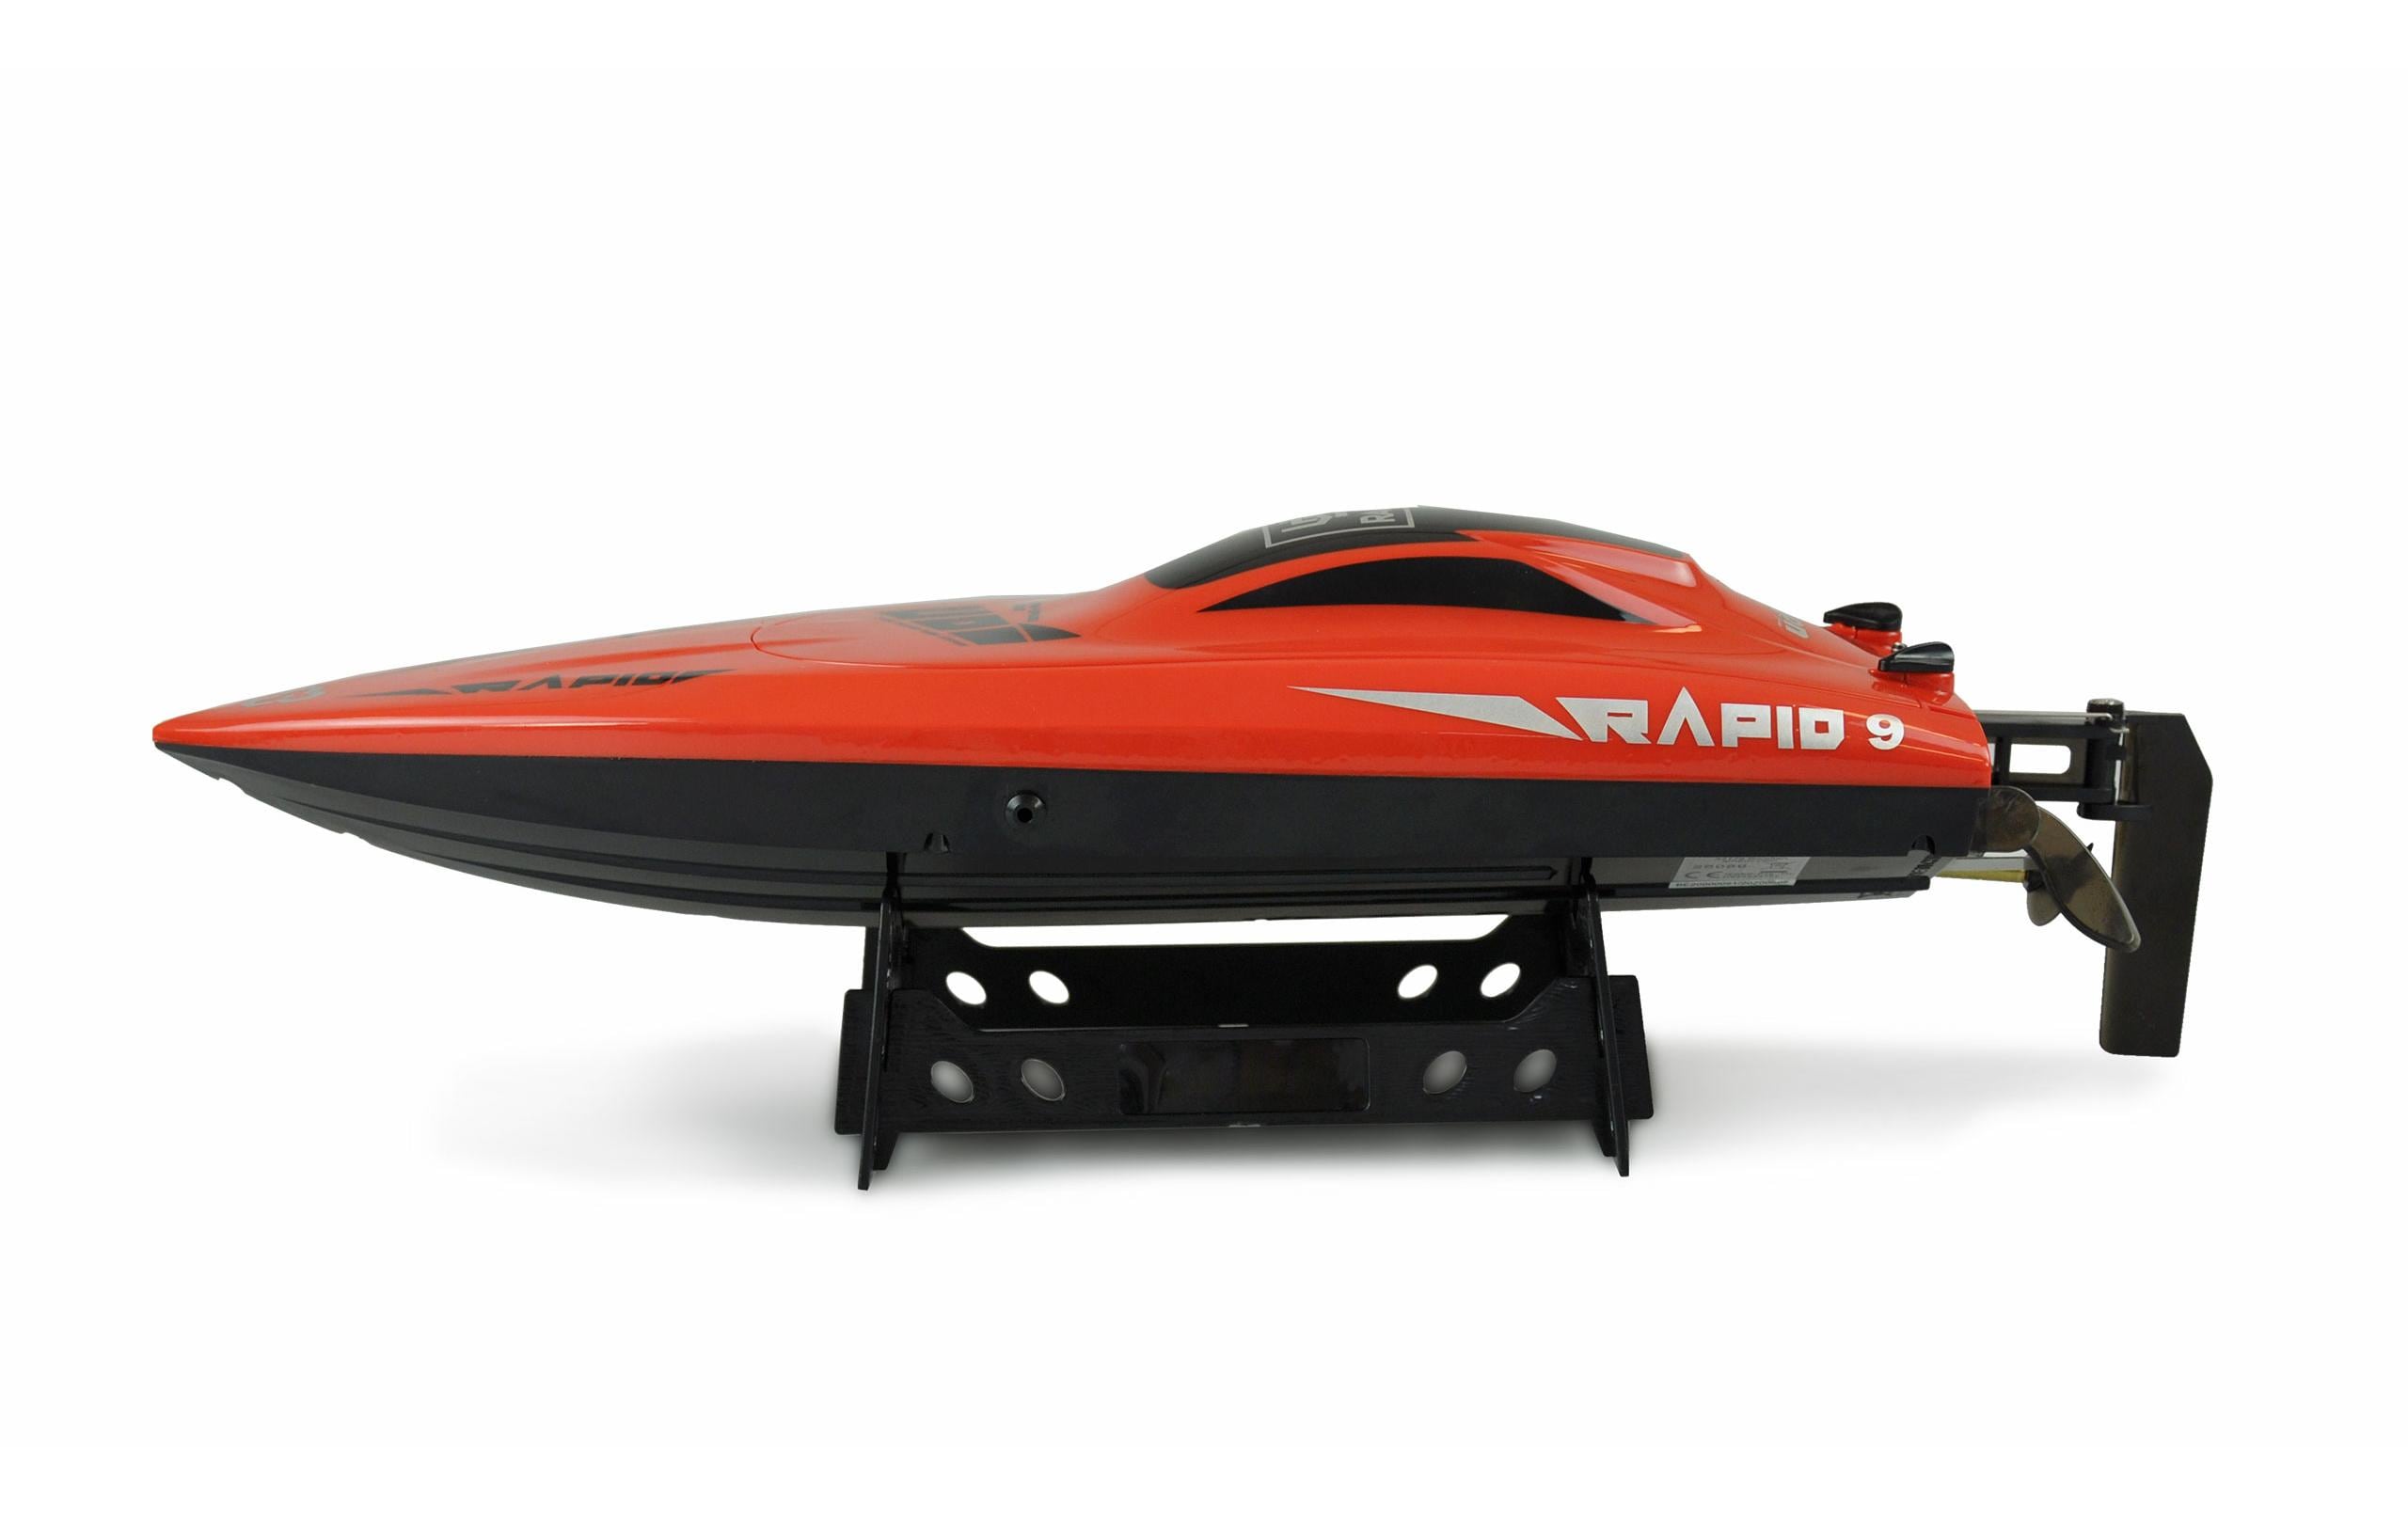 Amewi Speedboot Rapid Warrior Mono RTR